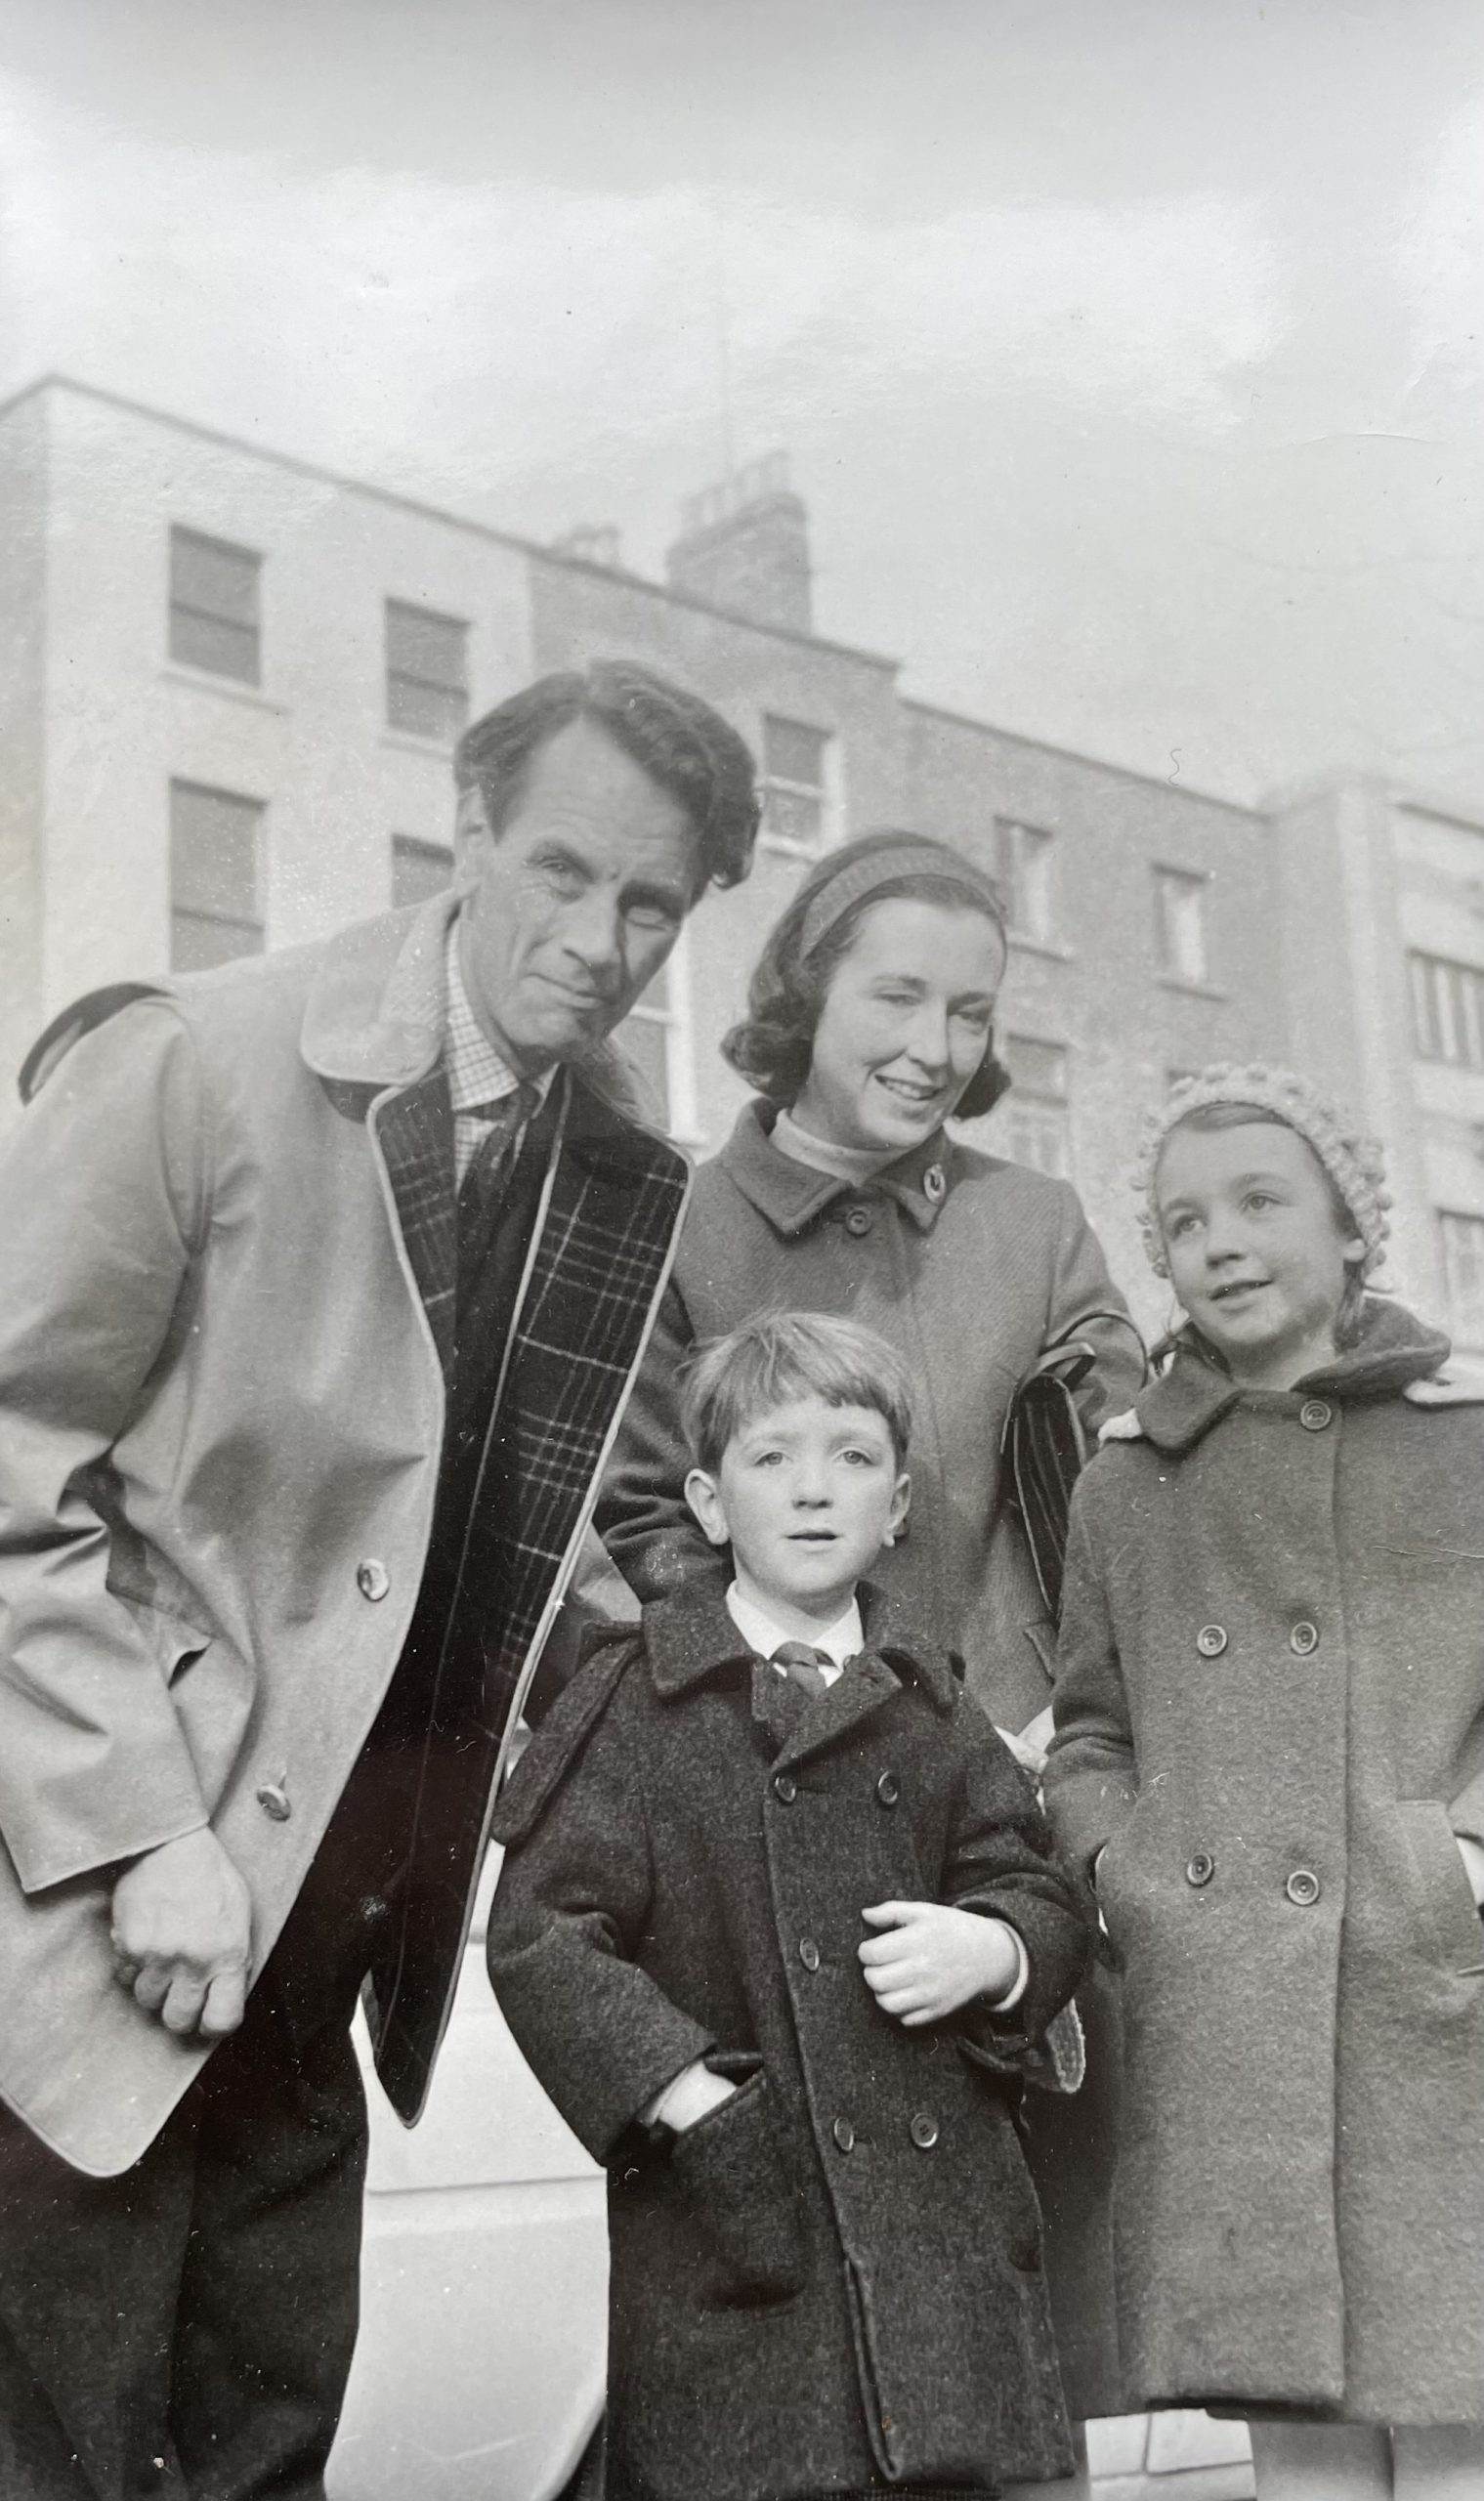 Left to right James E. R. Emmet, Clemency Emmet, Amanda Emmet and Philip Emmet outside the Emmet House on St Stephen’s Green, 1966. Courtesy of the Emmet Family.